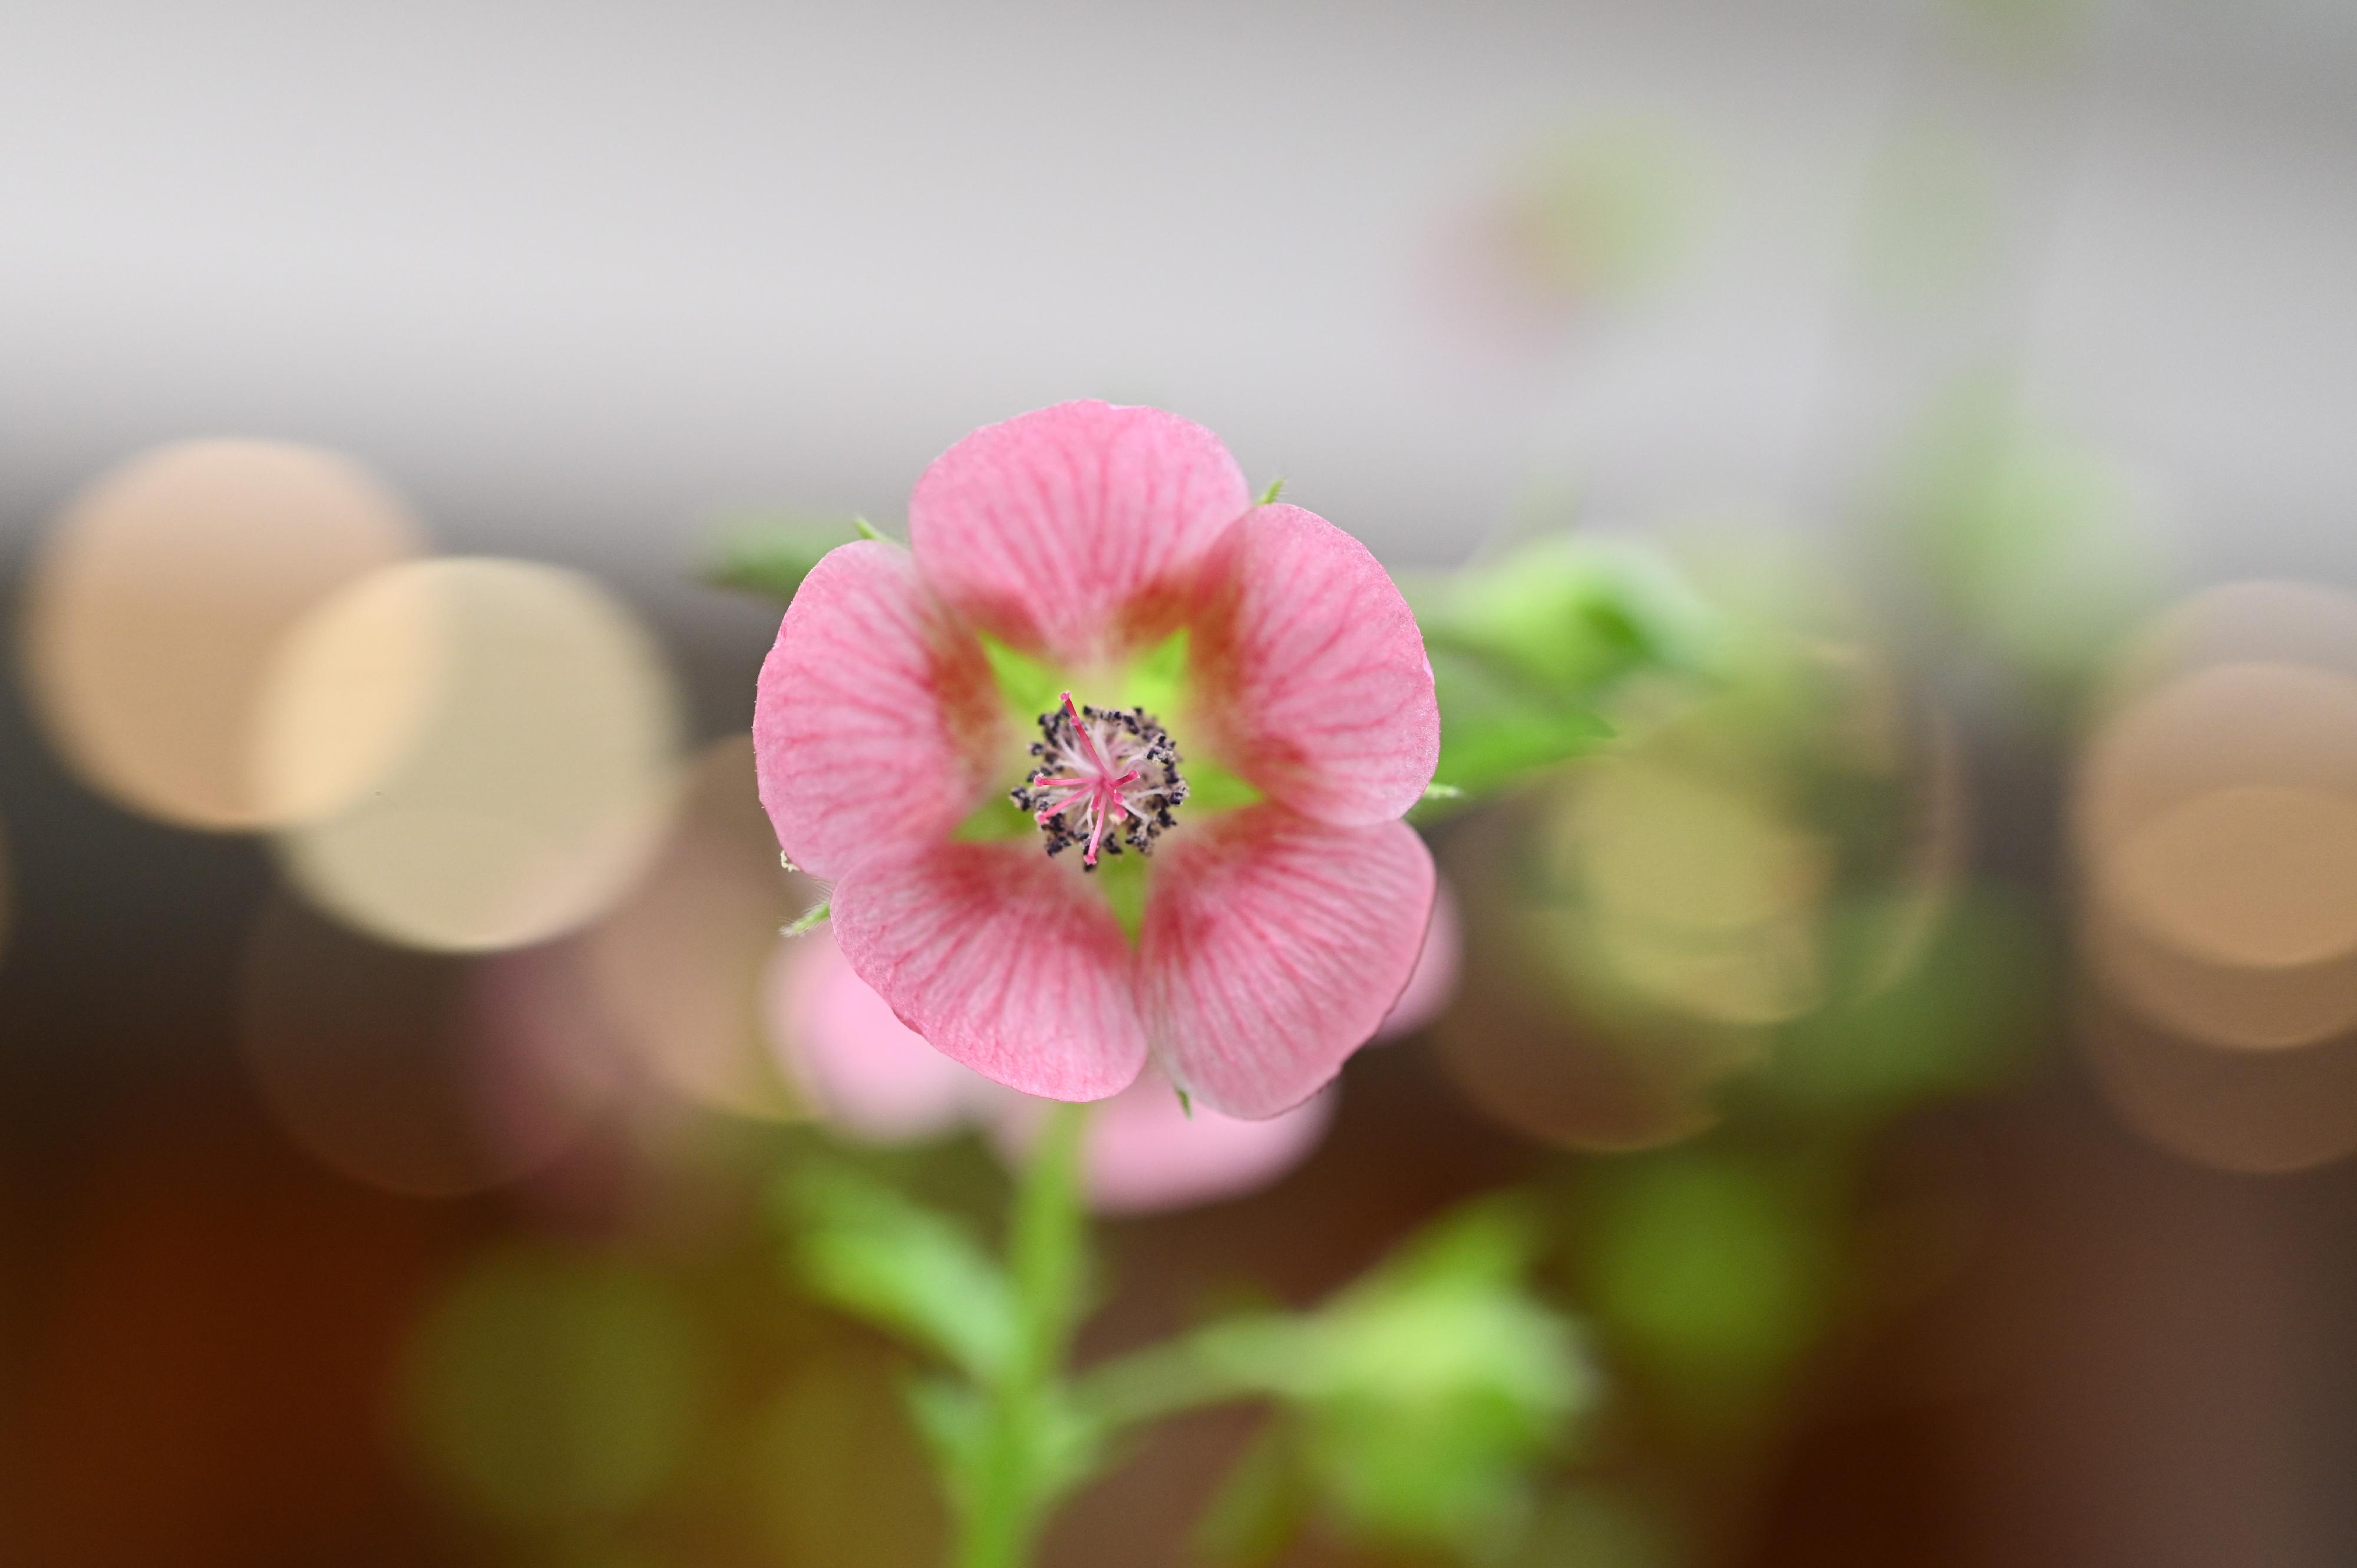 康樂及文化事務署轄下香港公園霍士傑溫室四月二十二日起舉辦食用花與香草展覽，展出500多株不同形態的春季食用花與香草。圖示展覽內展出的小木槿。